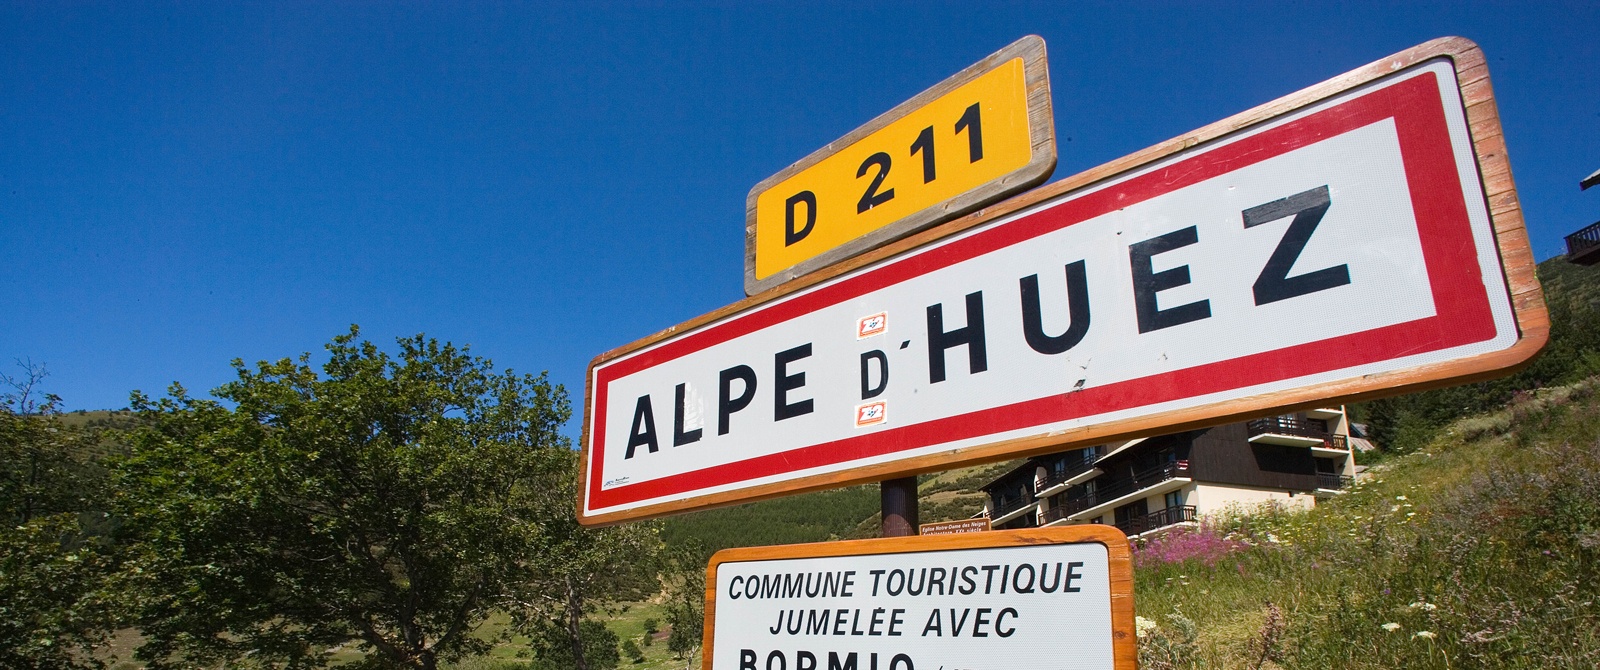 The mythic Alpe d’Huez